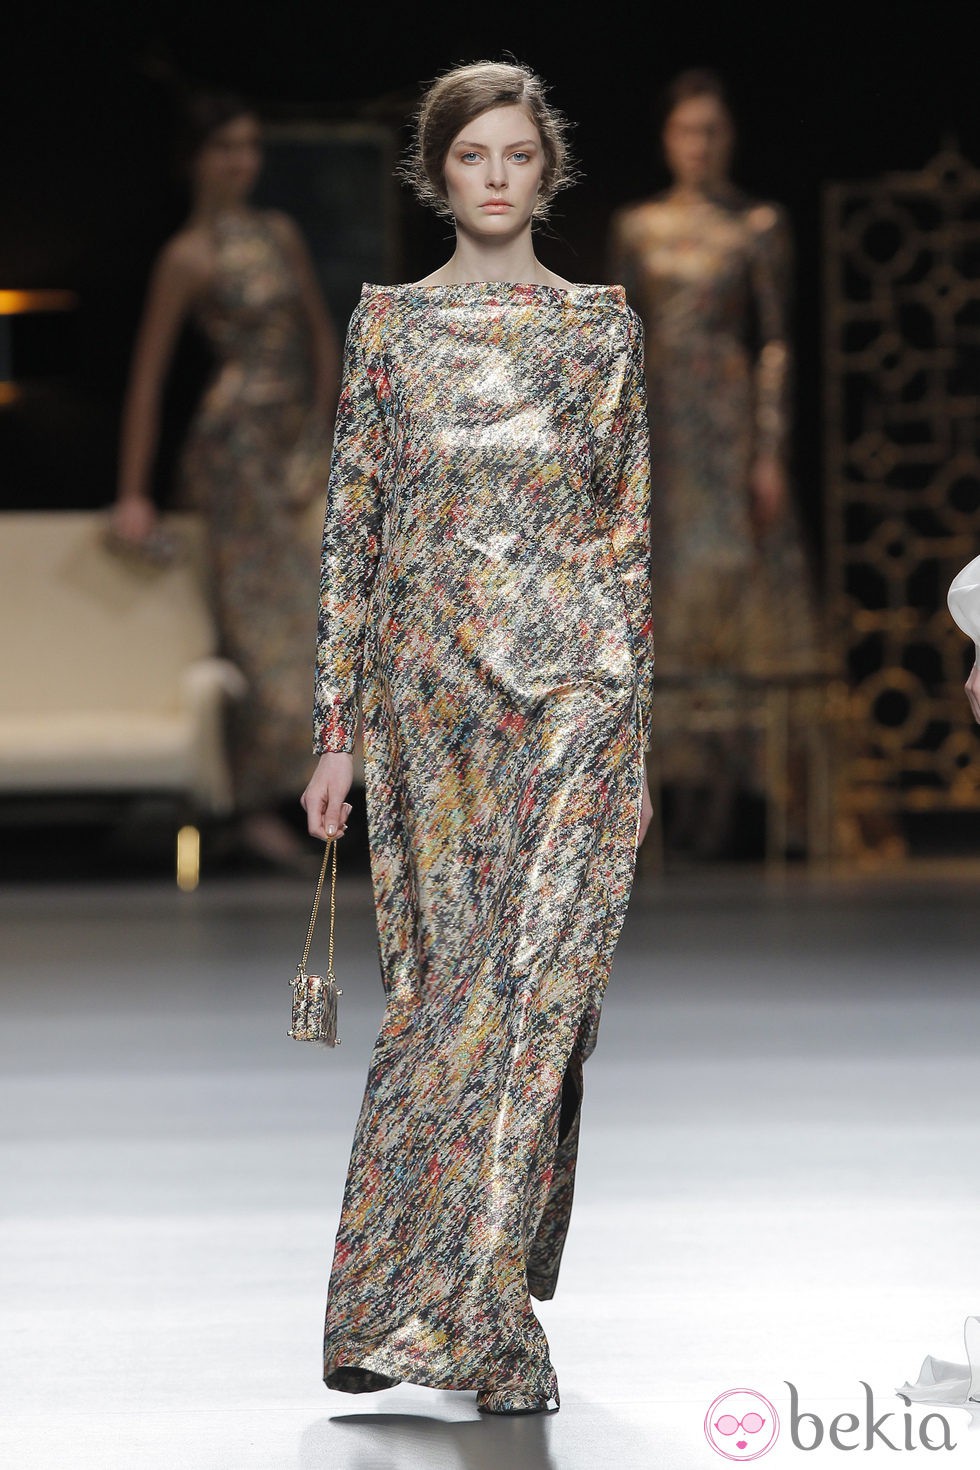 Vestido largo degradado de la colección otoño/invierno 2013/2014 de Juanjo Oliva en Madrid Fashion Week